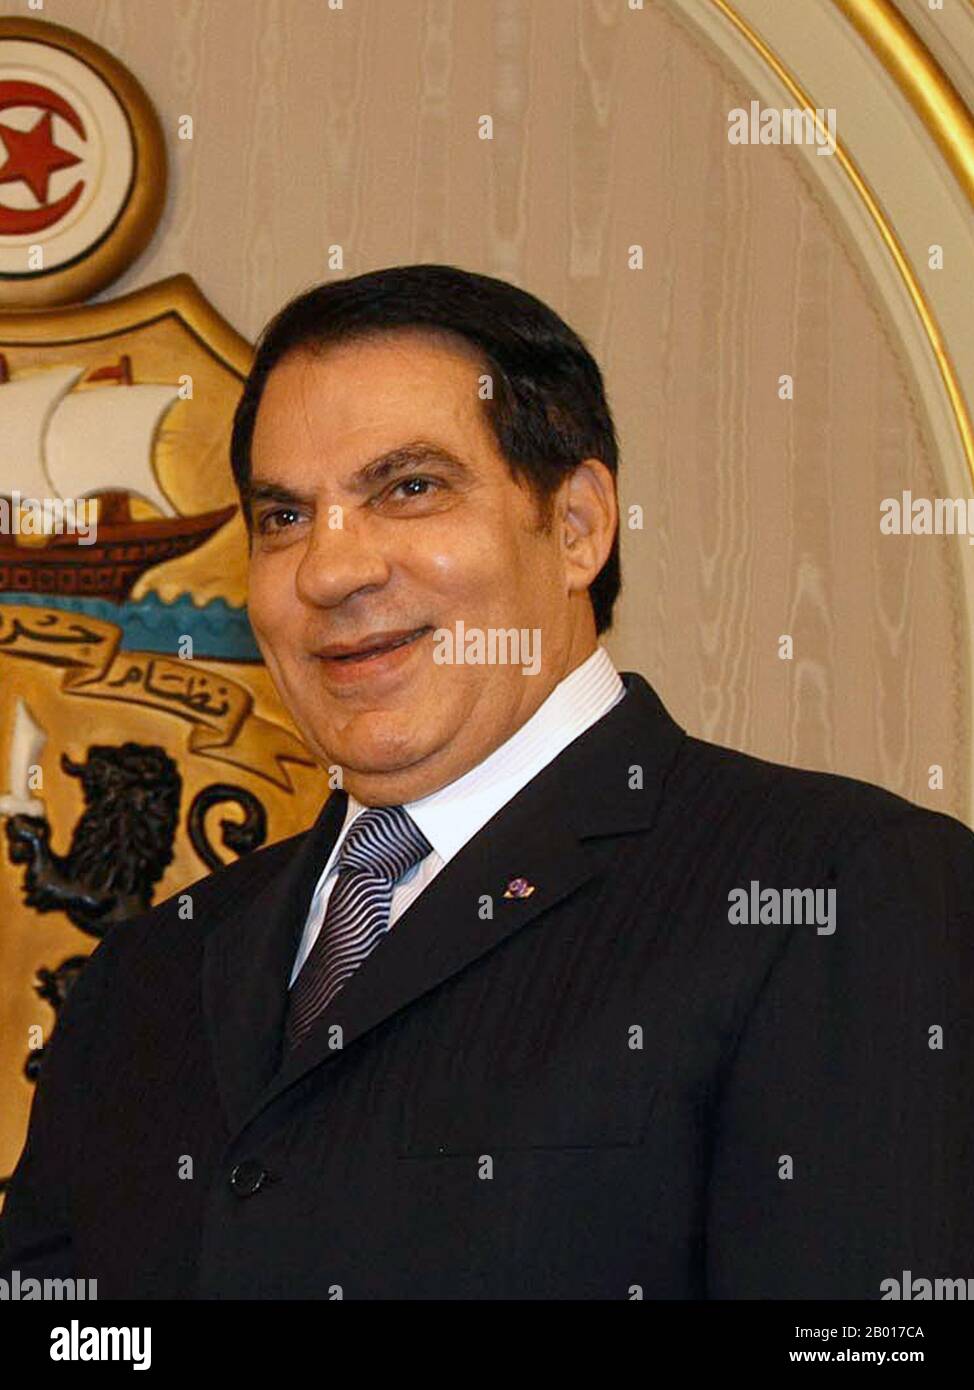 Tunisia: Zine El Abidine ben Ali, presidente della Tunisia (r. 1987-2011), novembre 2008, Presidente della Nacion Argentina (licenza CC BY-2,0). Zine El Abidine ben Ali (3 settembre 1936 – 19 settembre 2019) è stato il secondo presidente della Repubblica tunisina. Tenne l'ufficio dal 7 novembre 1987, fino a quando fu costretto a scendere e fuggire dal paese il 14 gennaio 2011. Ben Ali fu nominato primo Ministro nell'ottobre 1987, e assunse la presidenza nel novembre 1987 in un colpo di Stato senza sangue dall'allora presidente Habib Bourguiba. Foto Stock